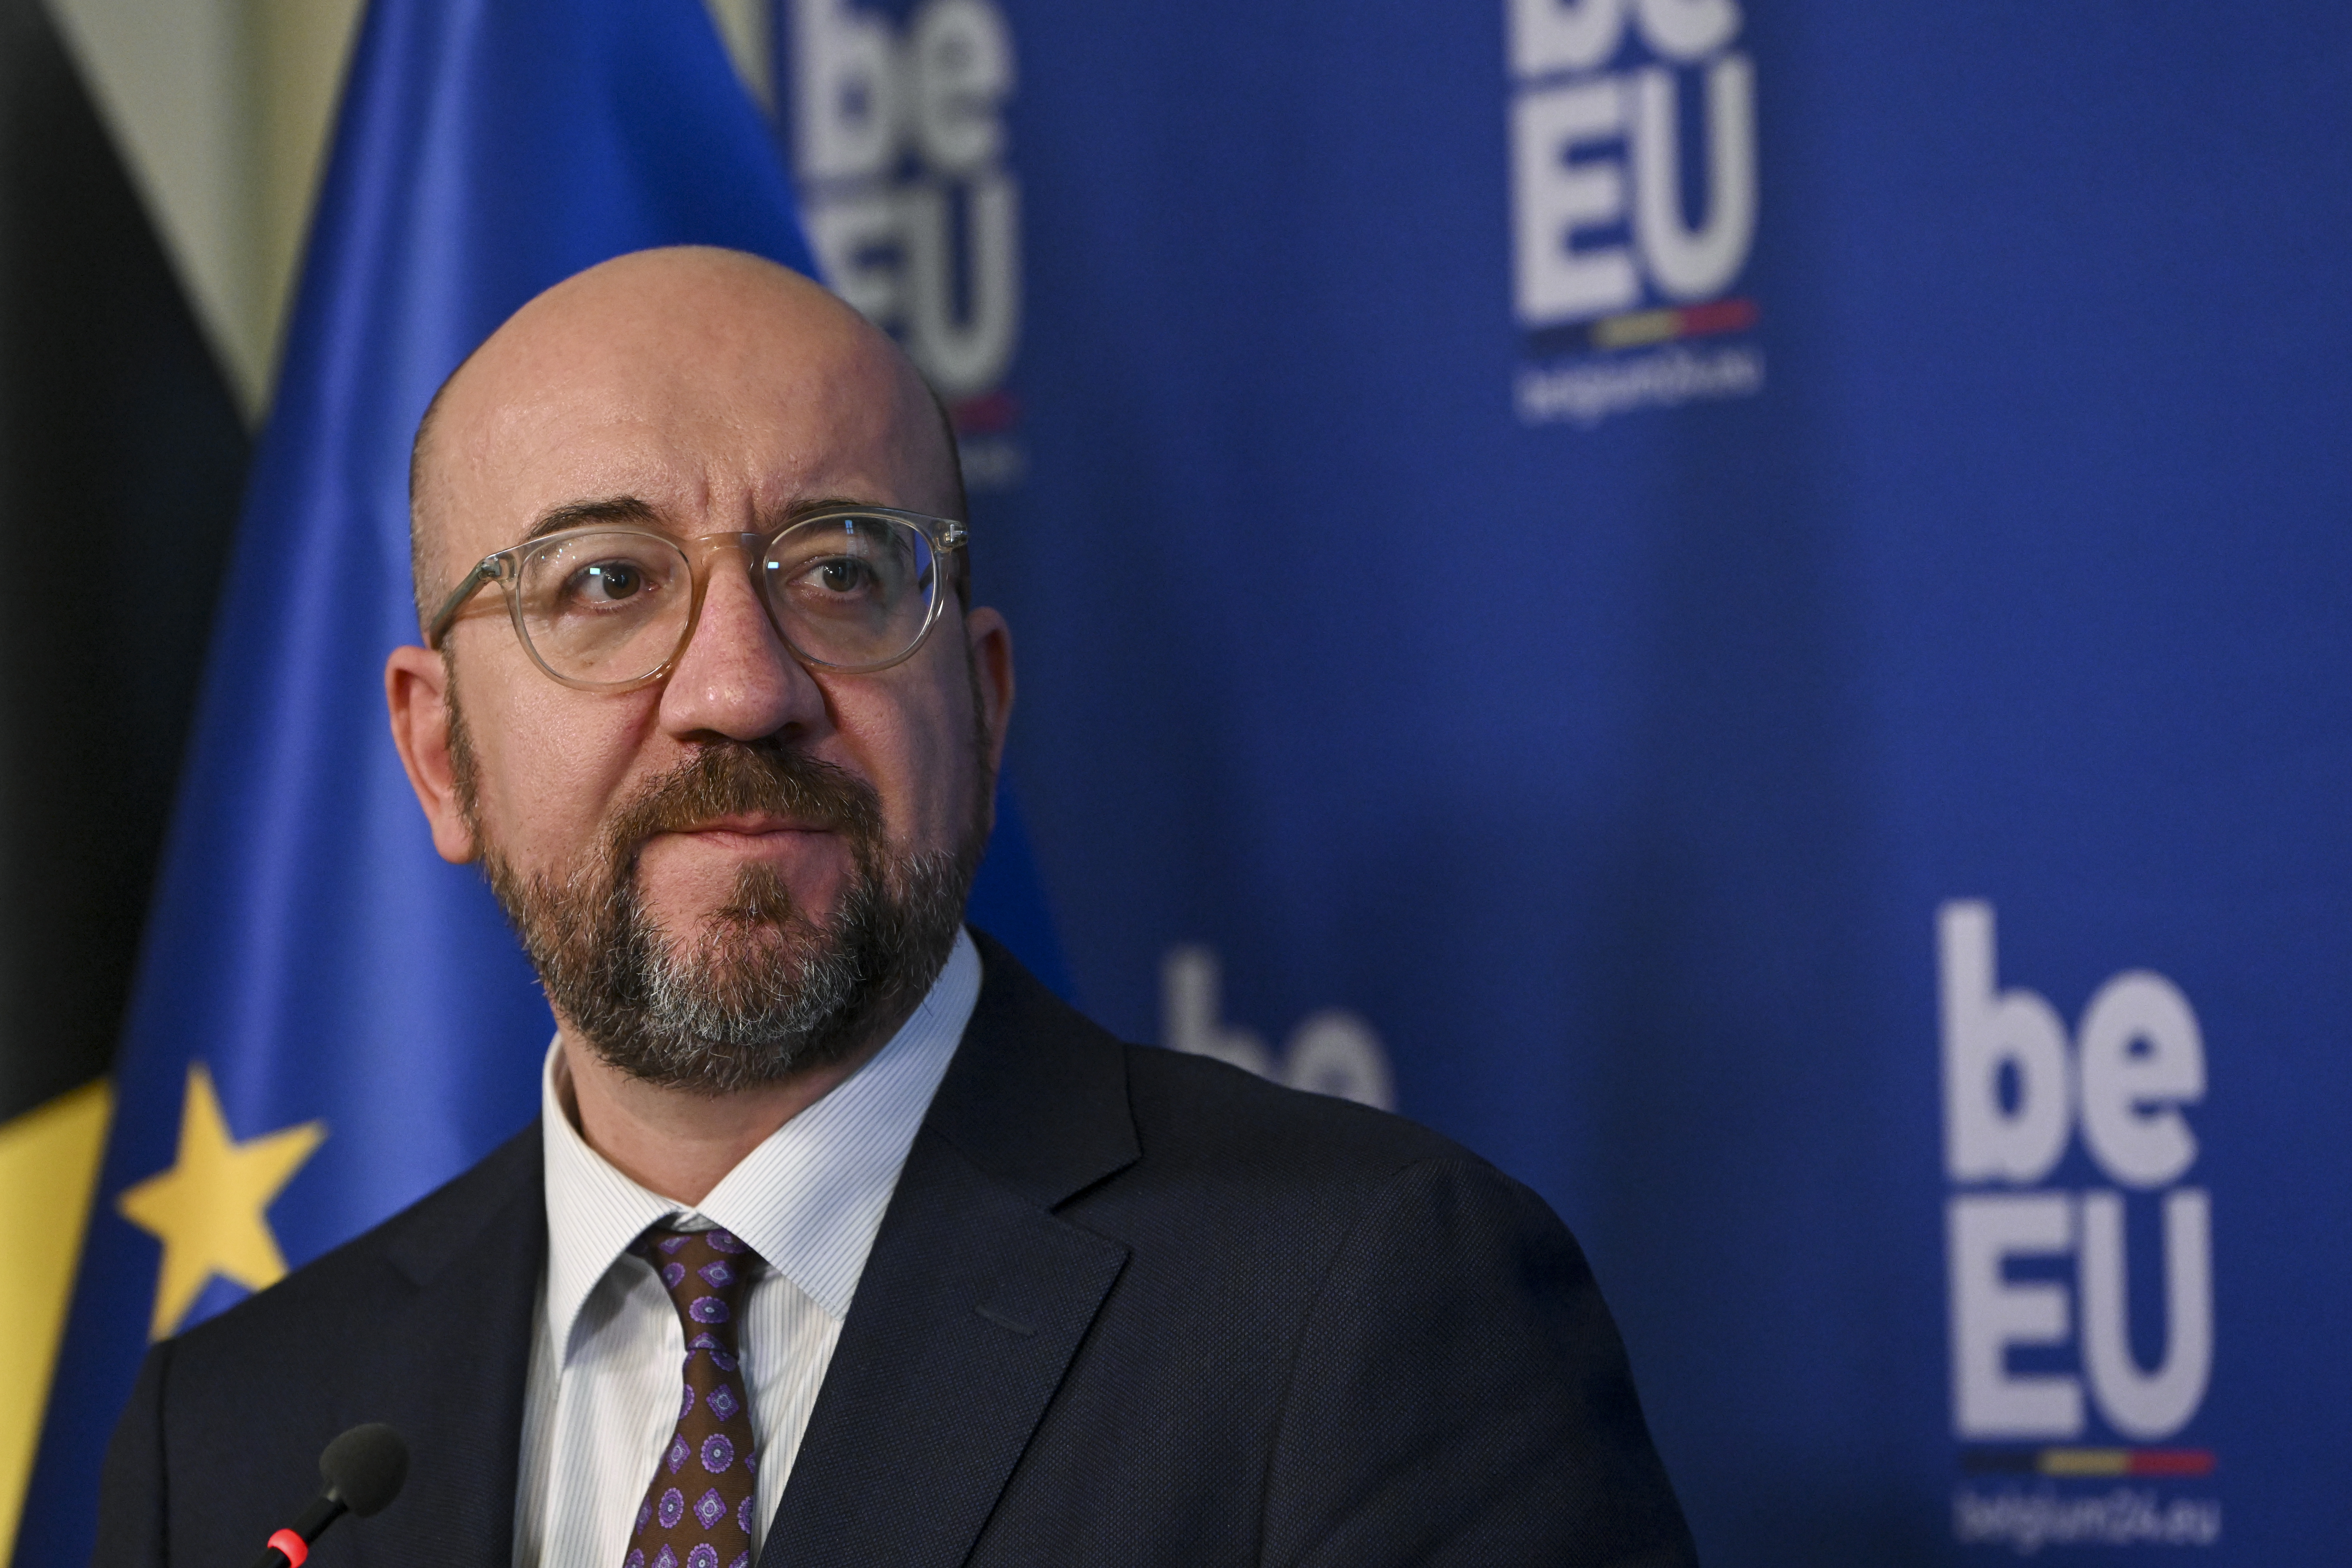 Přečtete si více ze článku Šéf Evropské rady Michel se po kritice rozhodl nekandidovat v eurovolbách